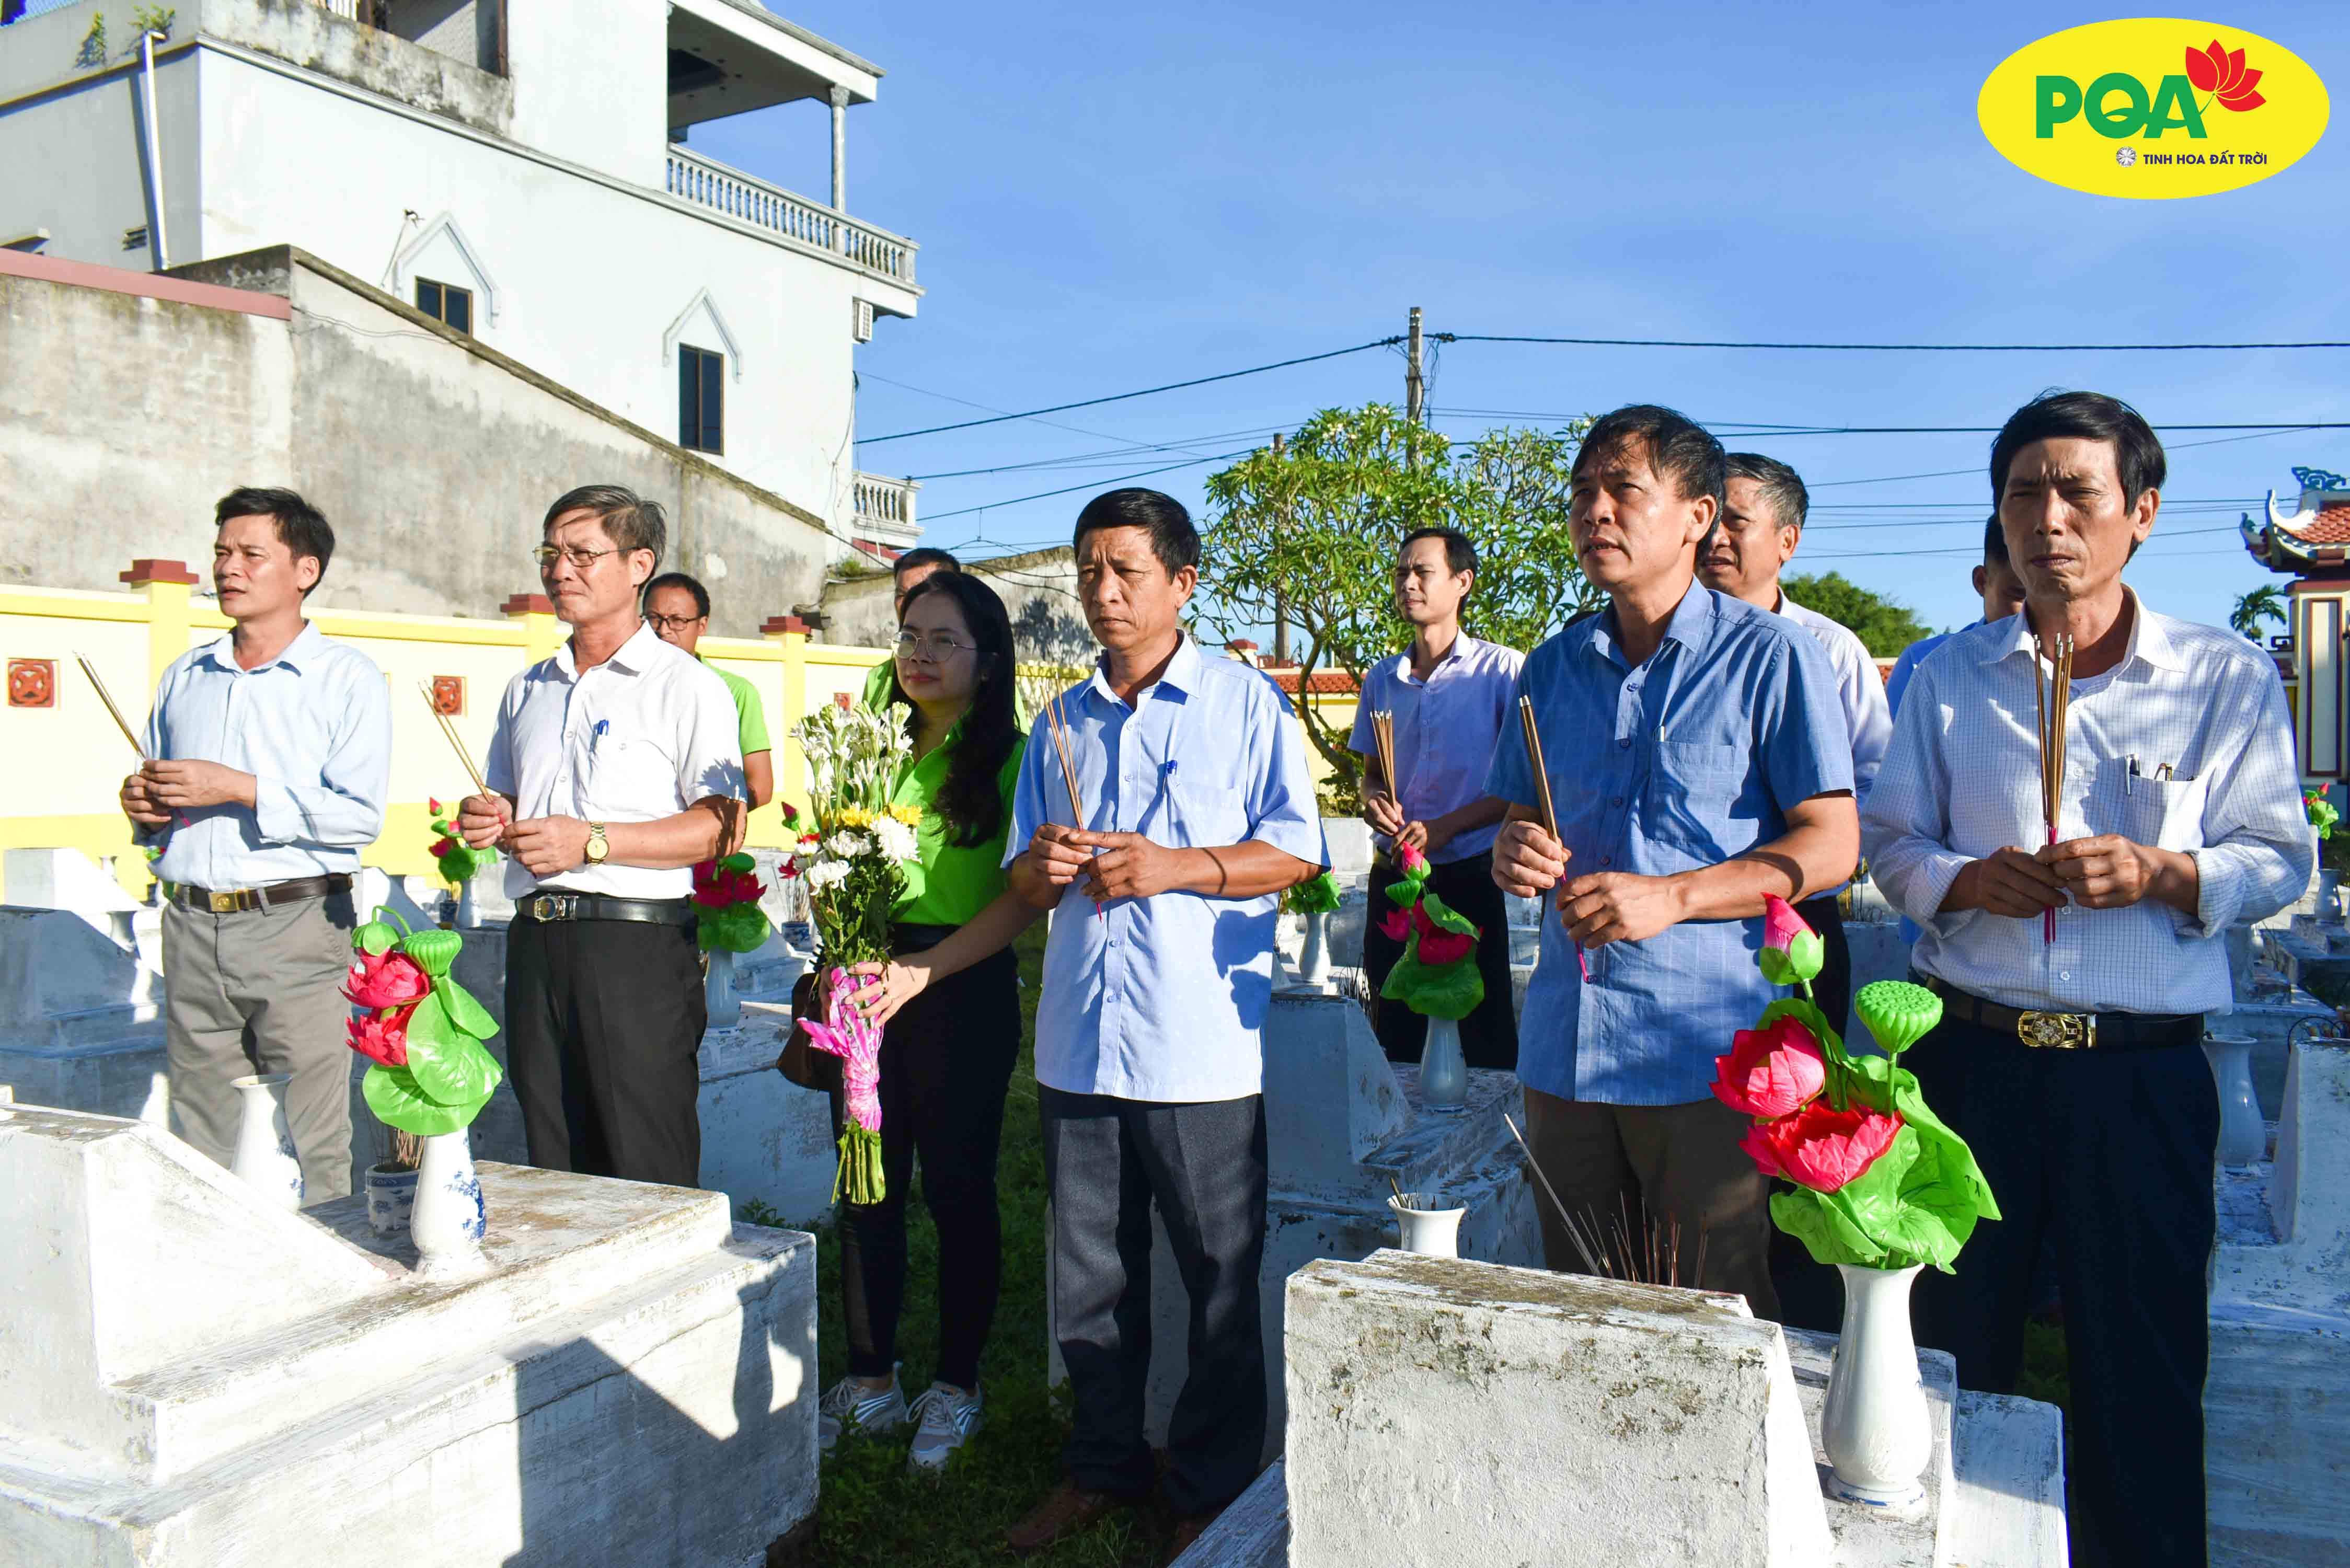 pqa cùng xã hải giang dâng hương tưởng niệm anh hùng liệt sĩ